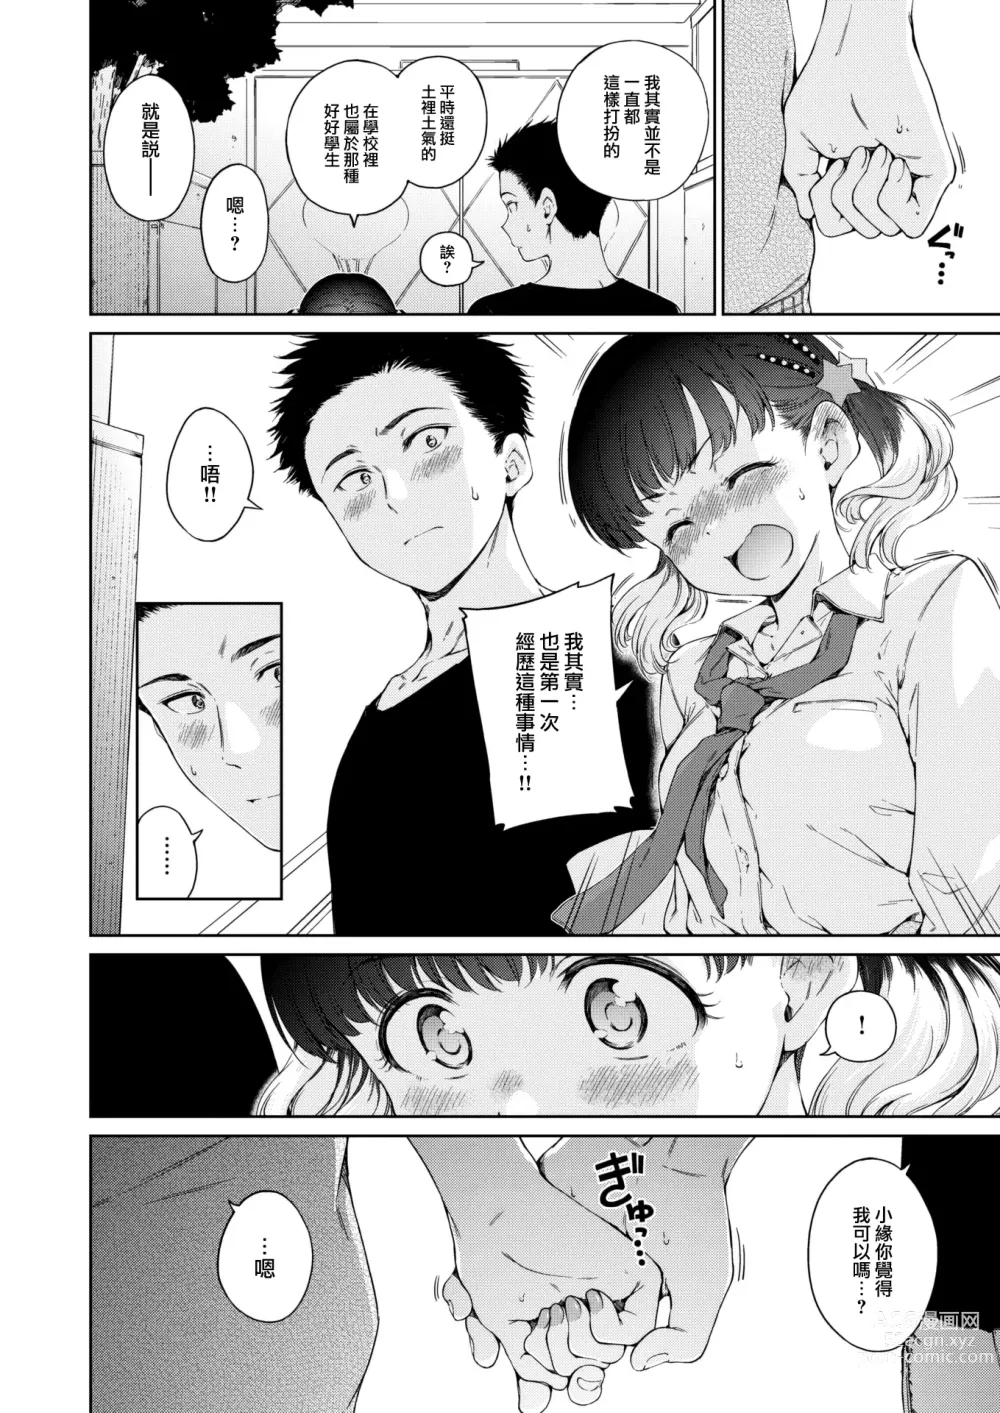 Page 13 of manga Natsu, Kibun Netsukkikyuu.